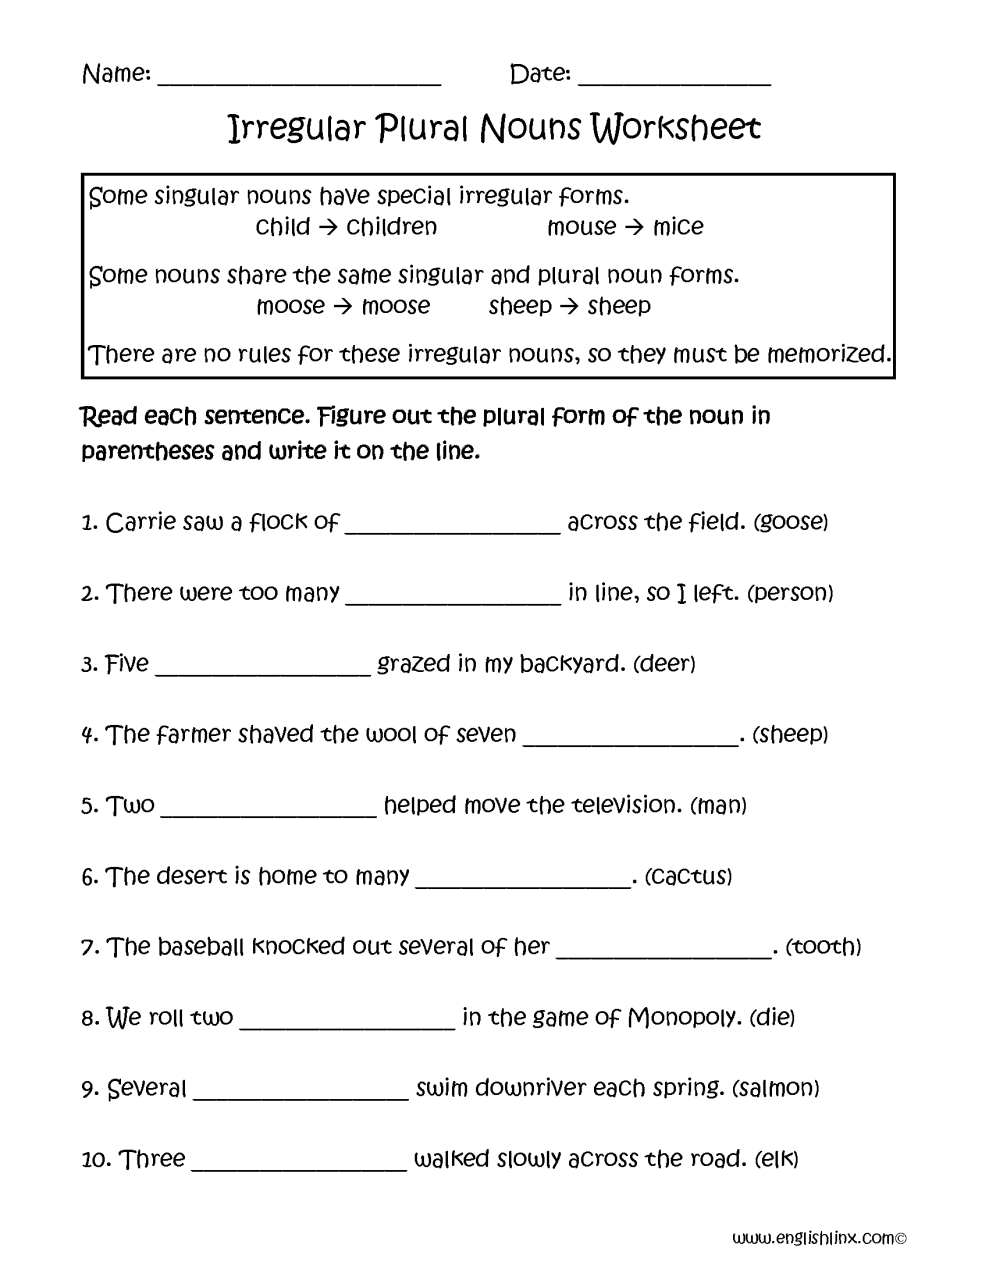 irregular-plural-nouns-worksheet-grade-4-kidsworksheetfun